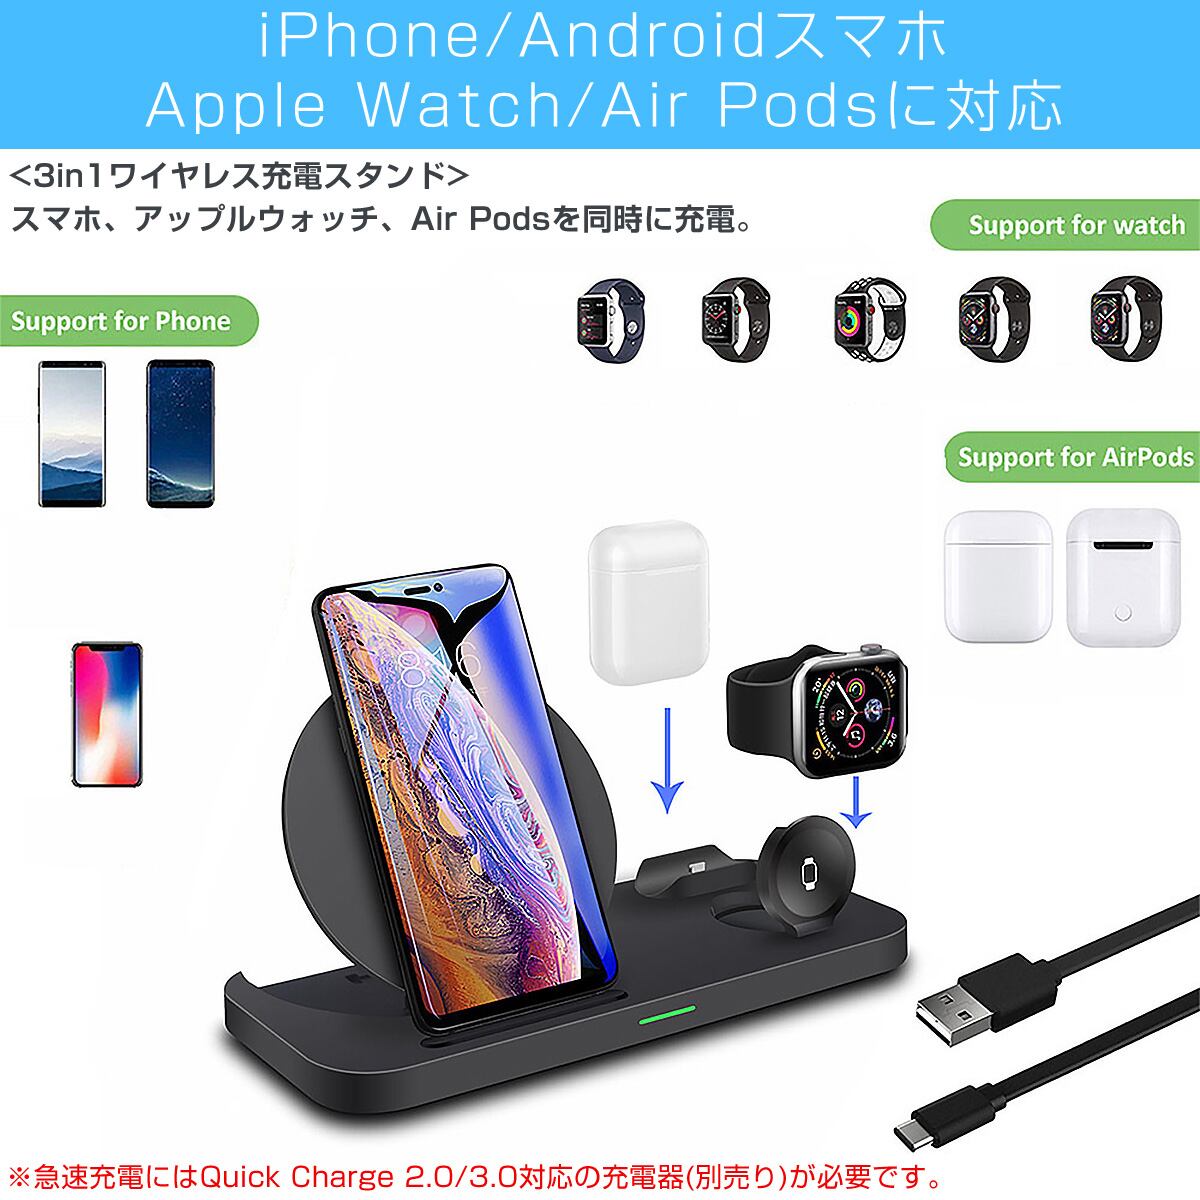 Qiワイヤレス充電スタンド 折り畳み式 3in1 iPhone スマホ アップル